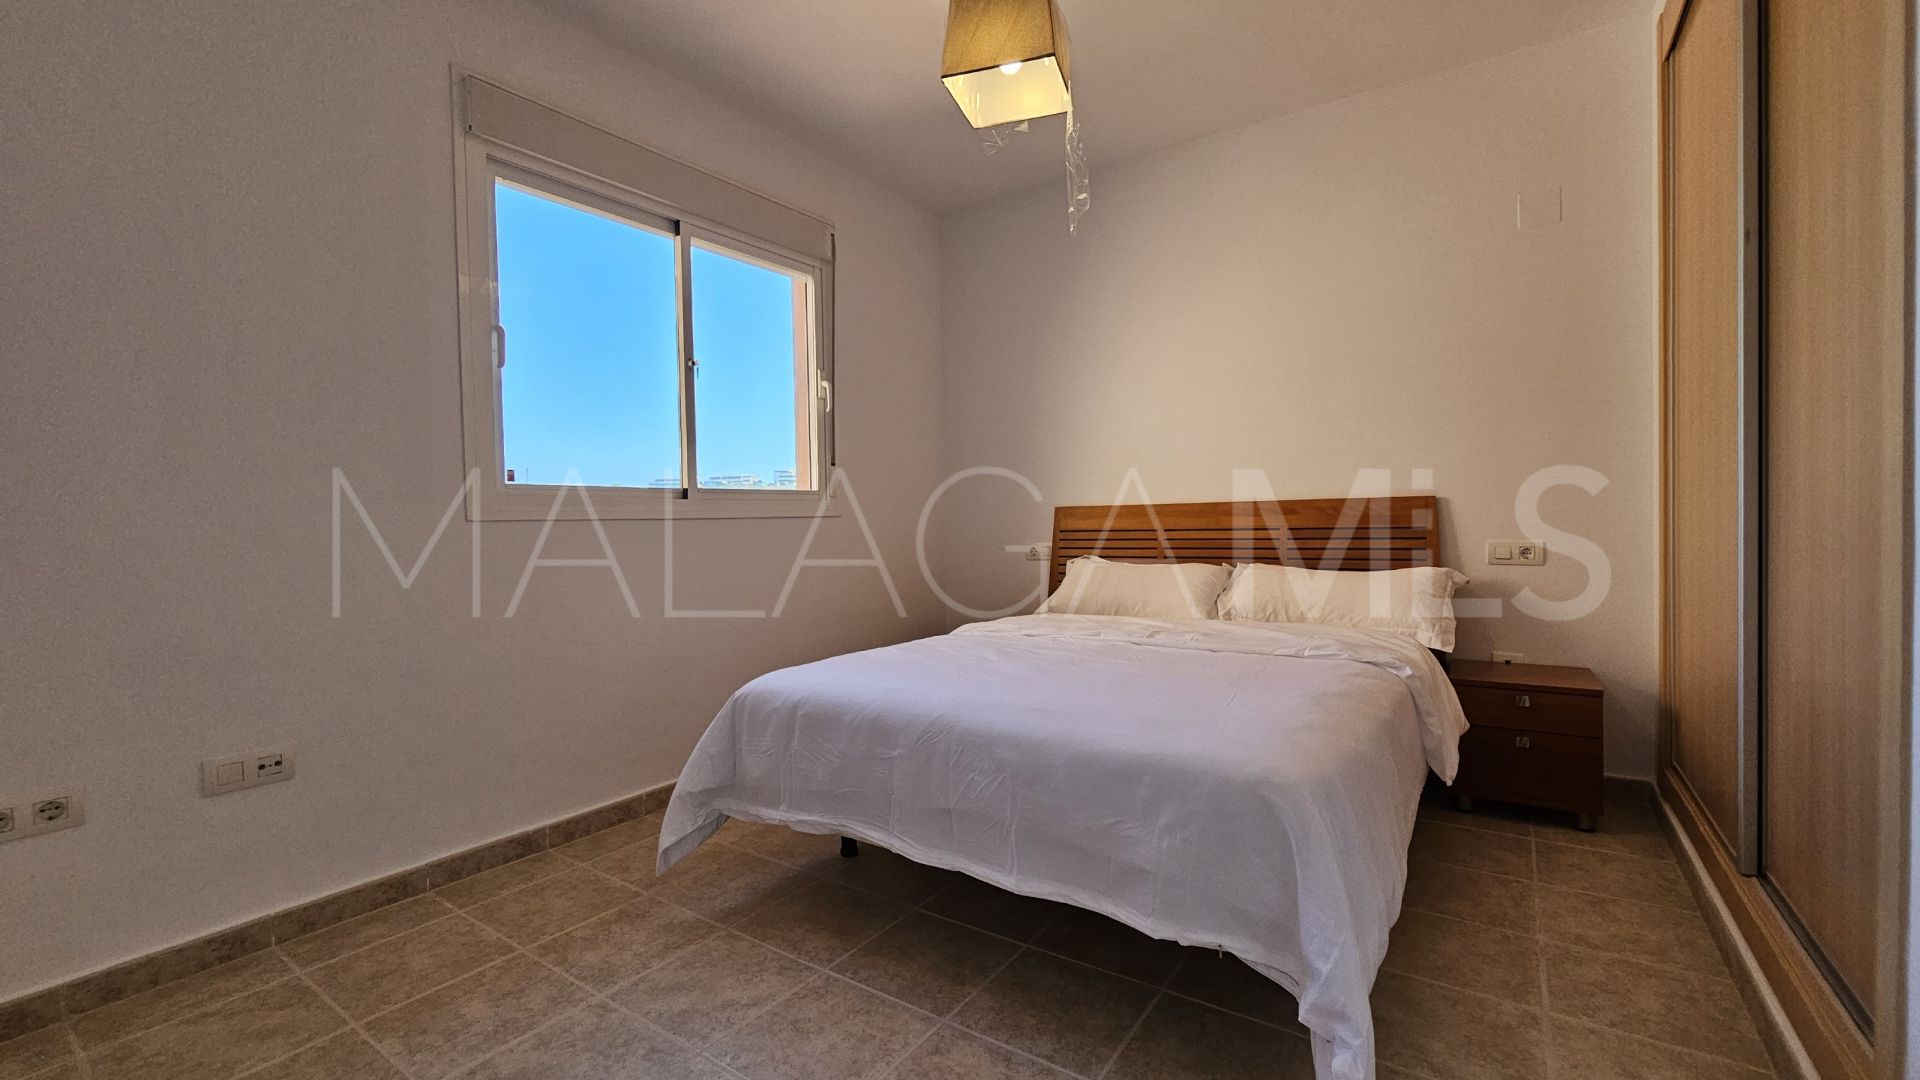 Finca Cortesin, apartamento planta baja for sale with 3 bedrooms